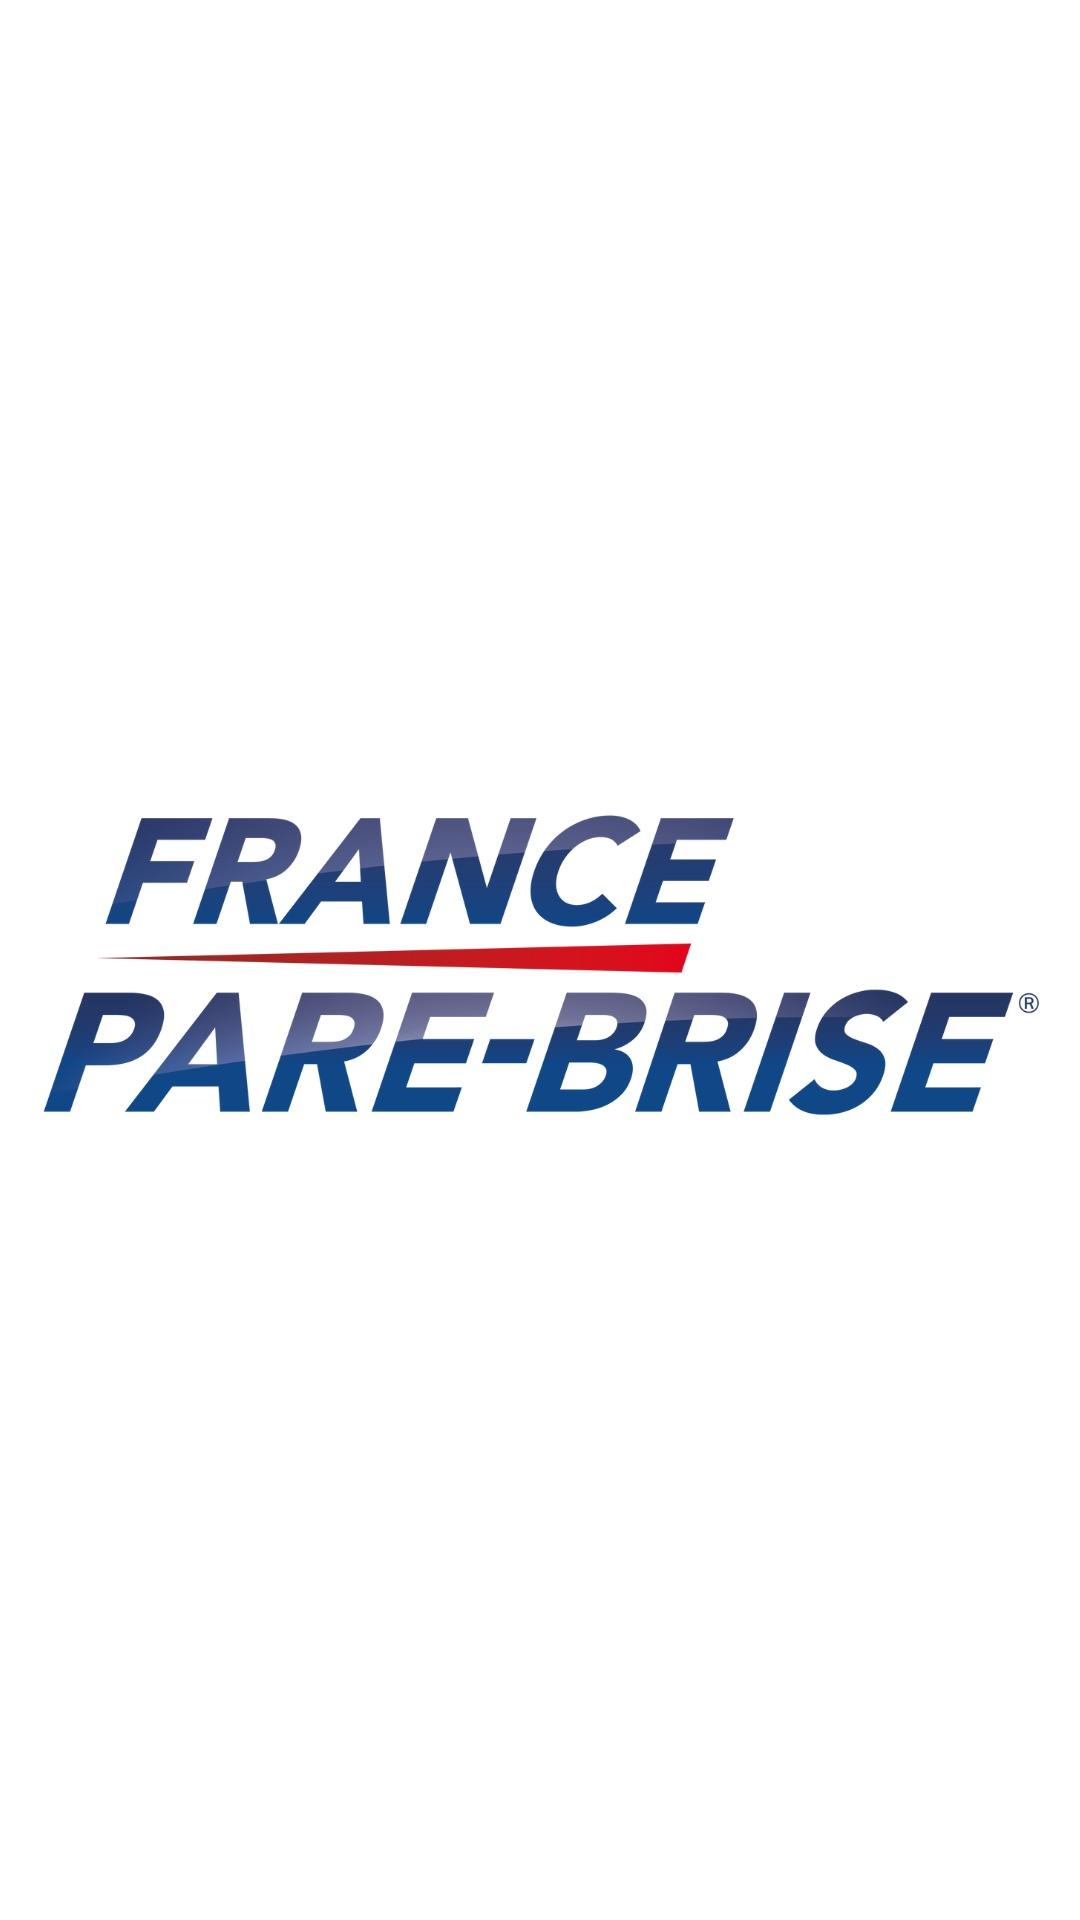 France Pare-brise La Guerche De Bretagne